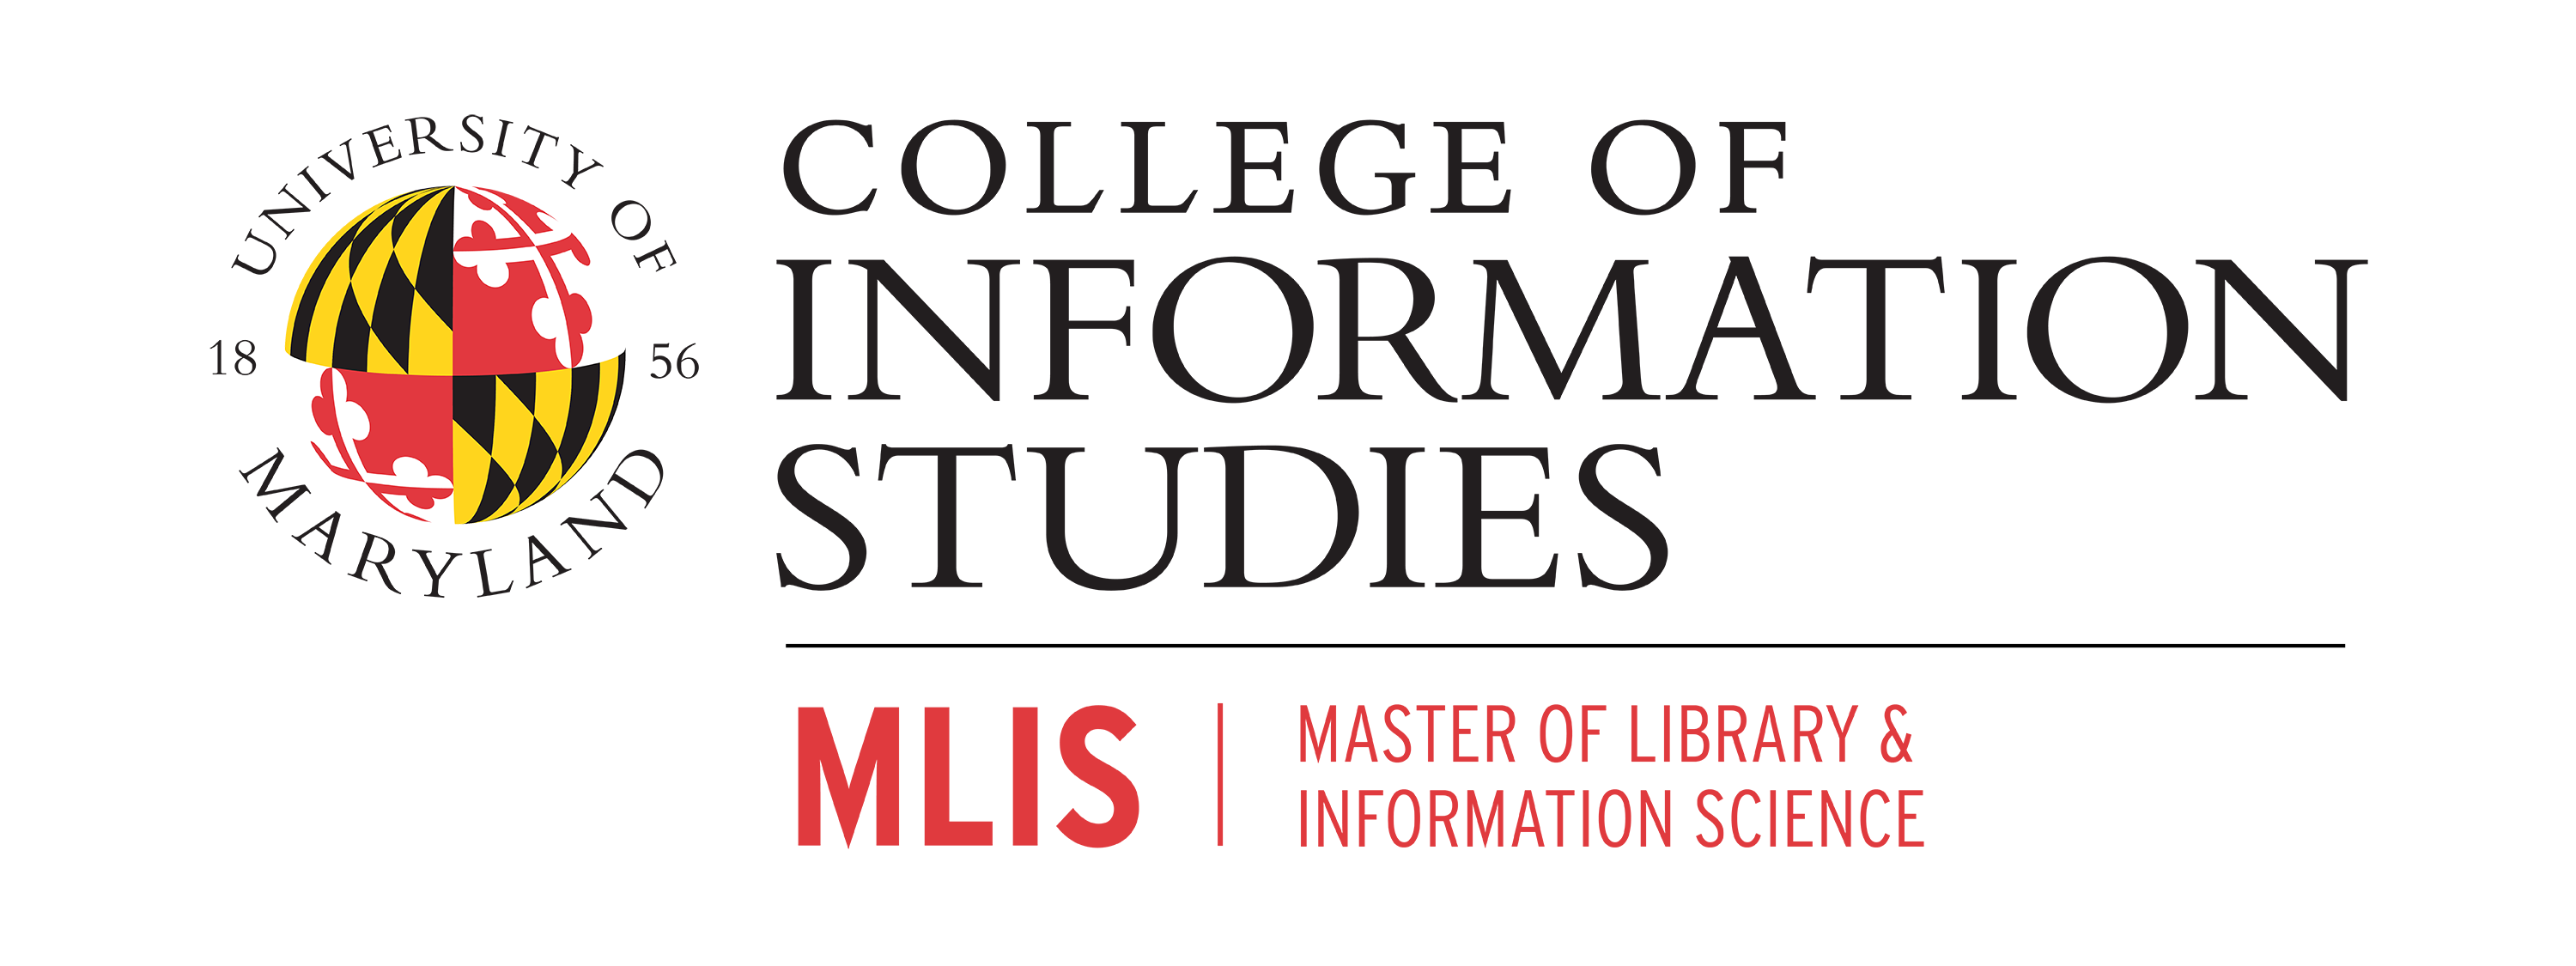 University of Maryland MLIS logo